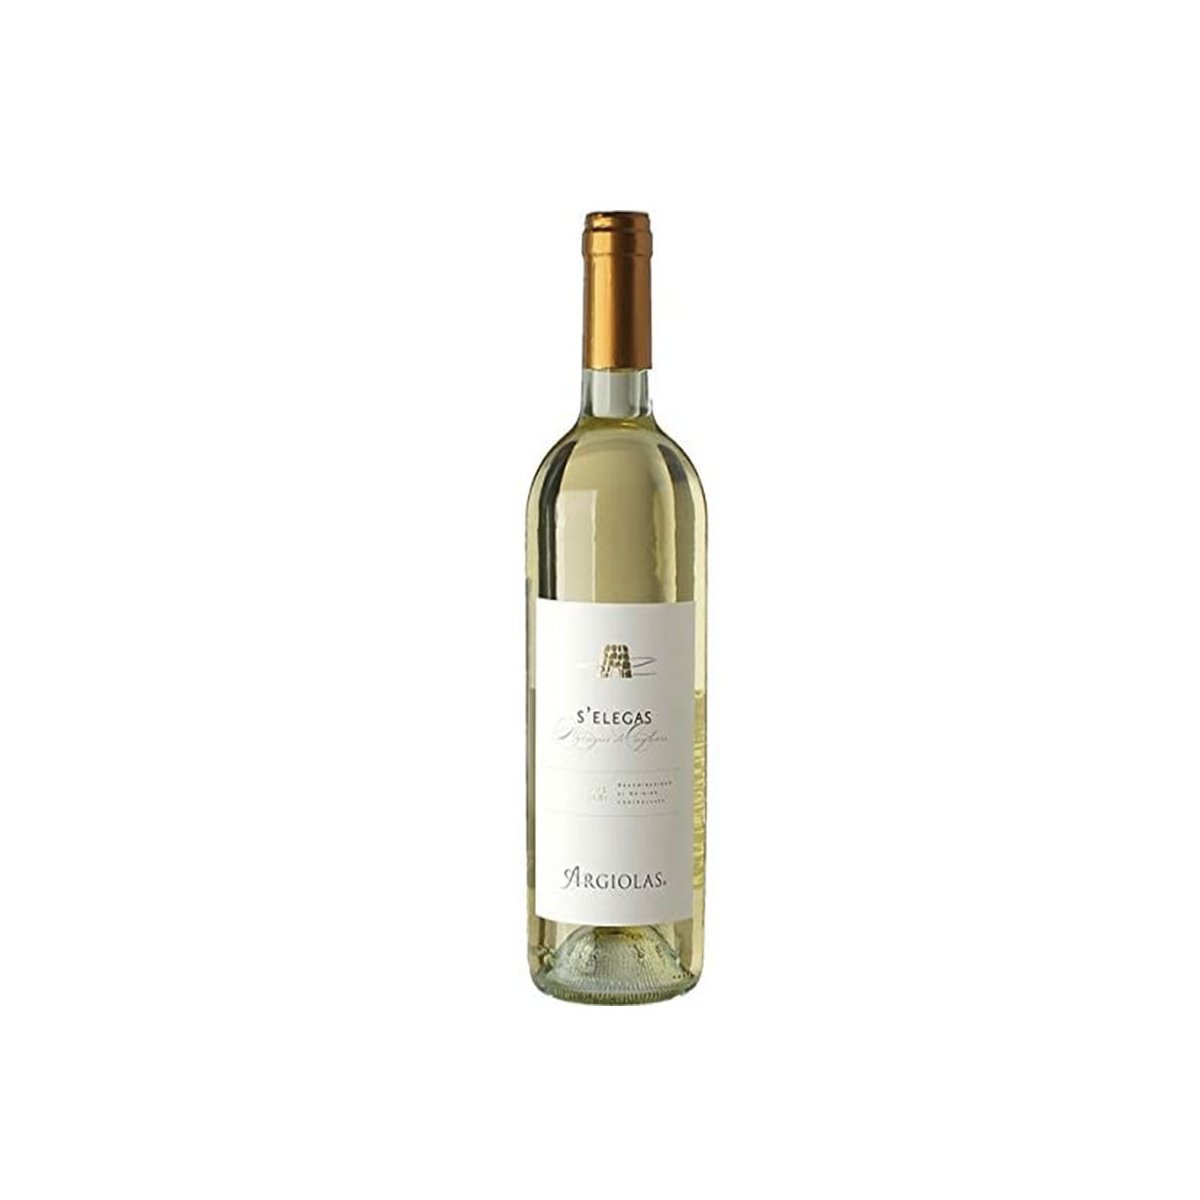 6 x 0.75 - S'elegas è un Vino bianco sardo, Nuragus di Cagliari DOC prodotto dalla storica cantina di Argiolas, a Serdiana